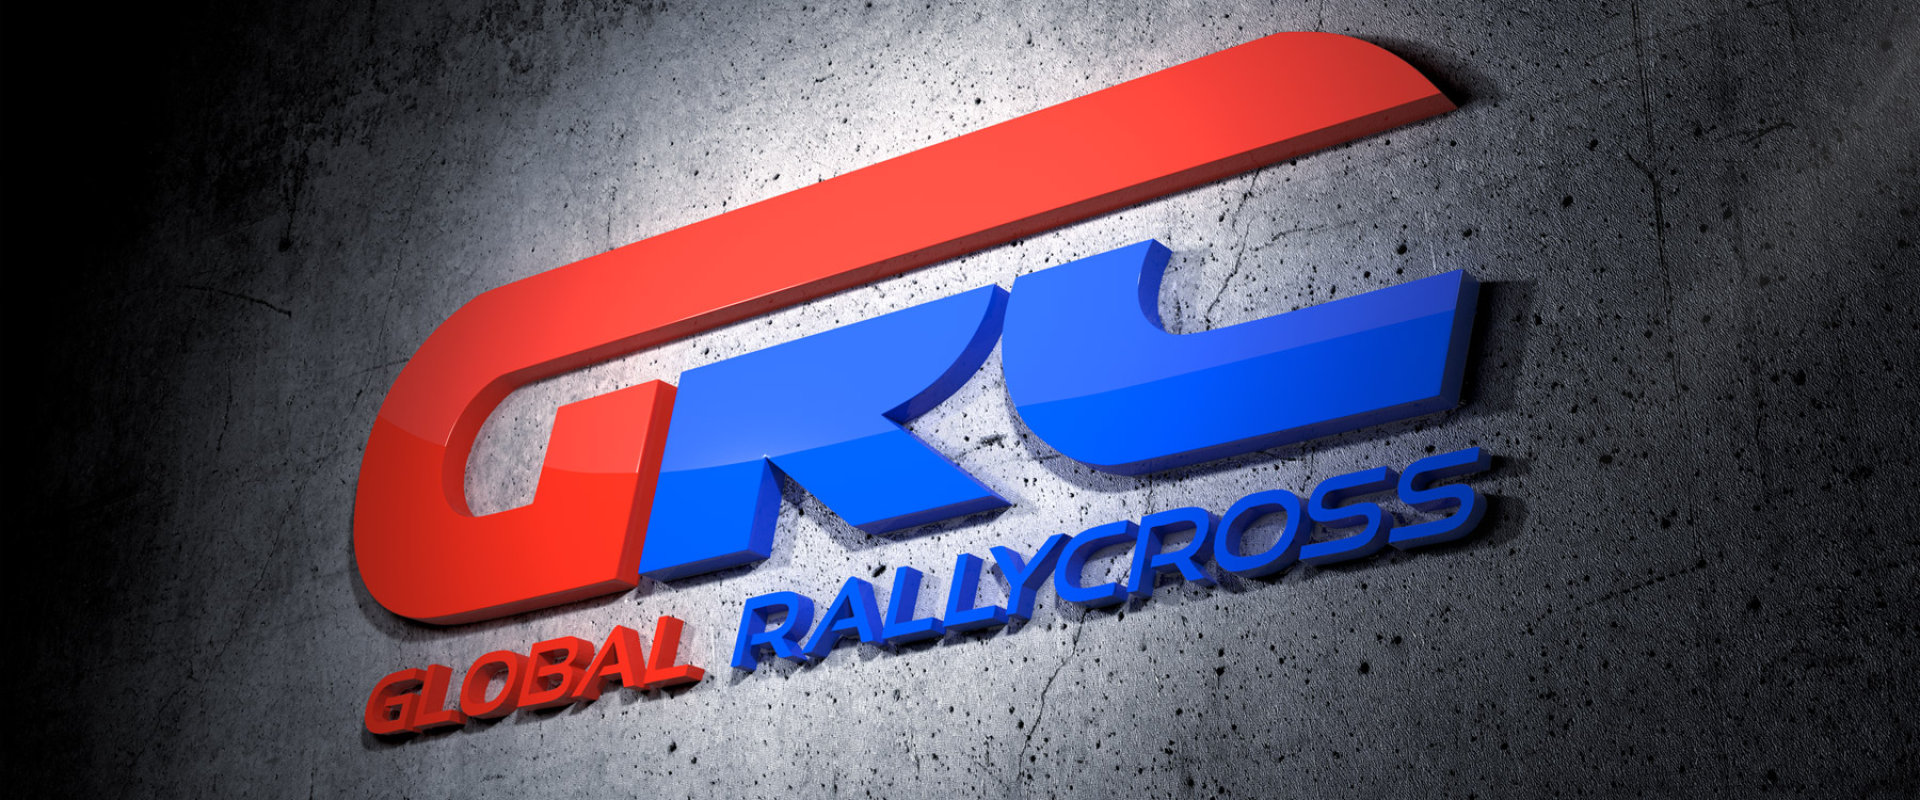 GRC Global Rallycross #3